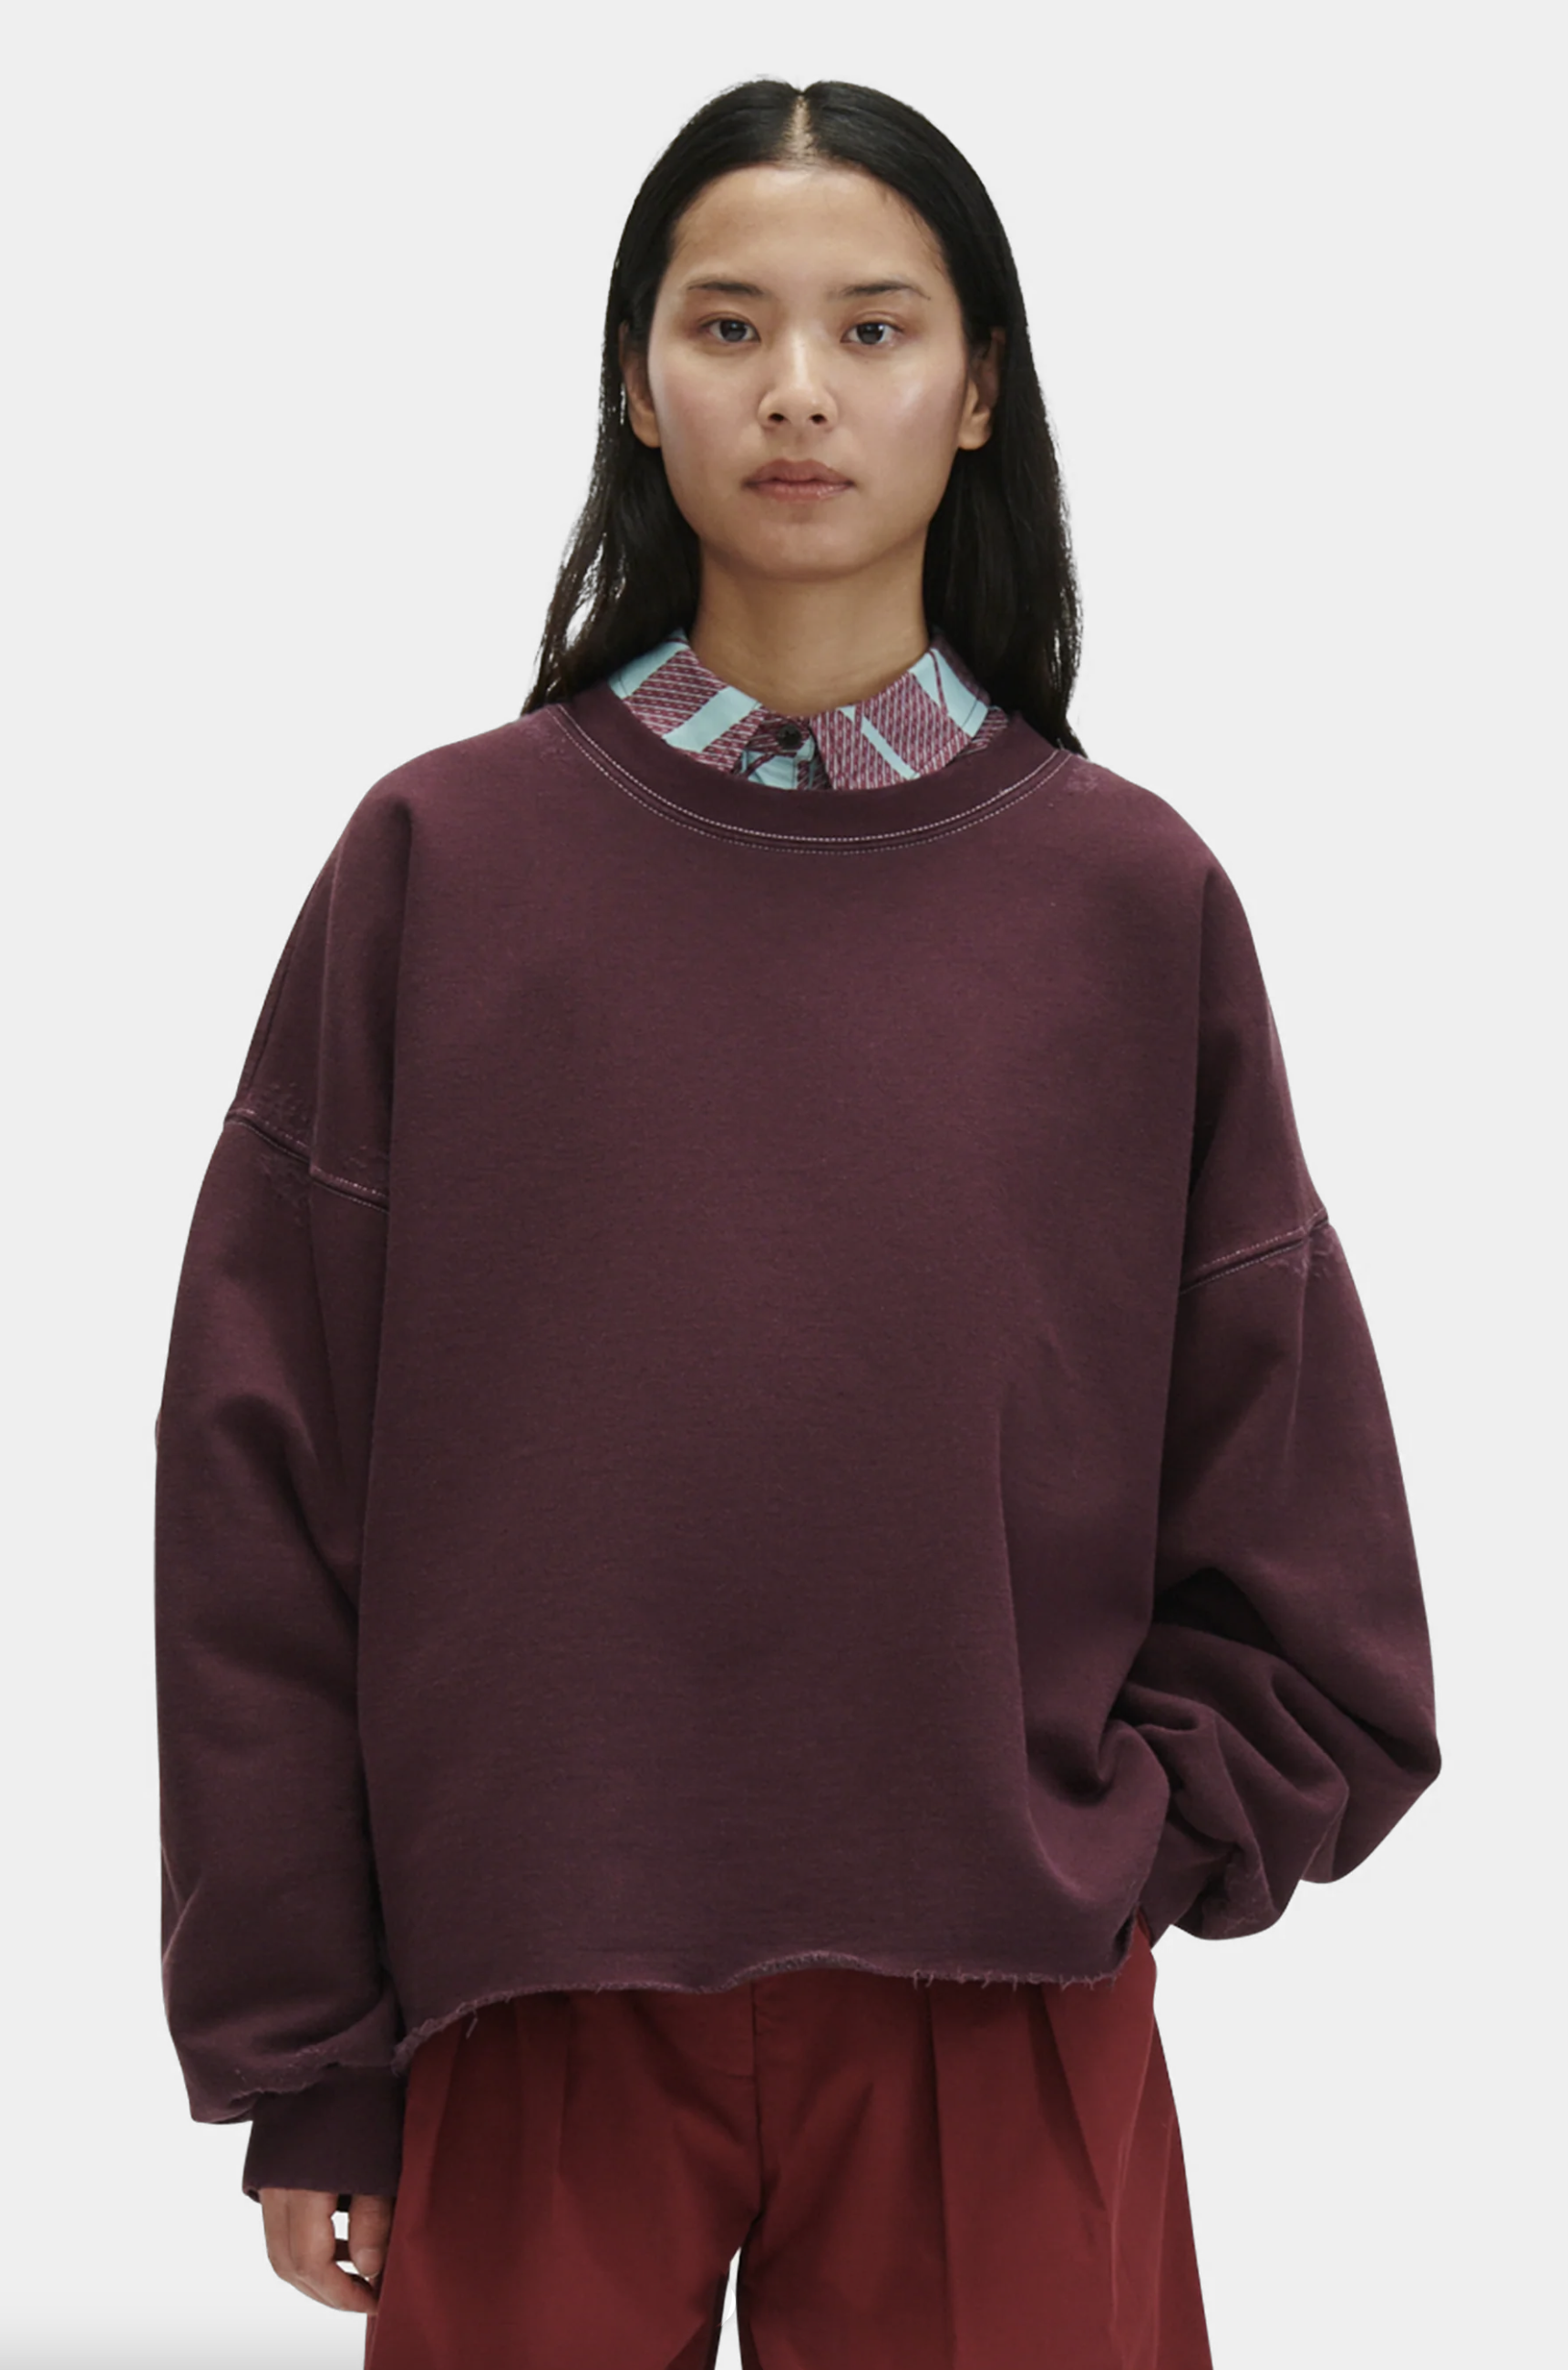 Fonder Sweatshirt in Plum by Rachel Comey